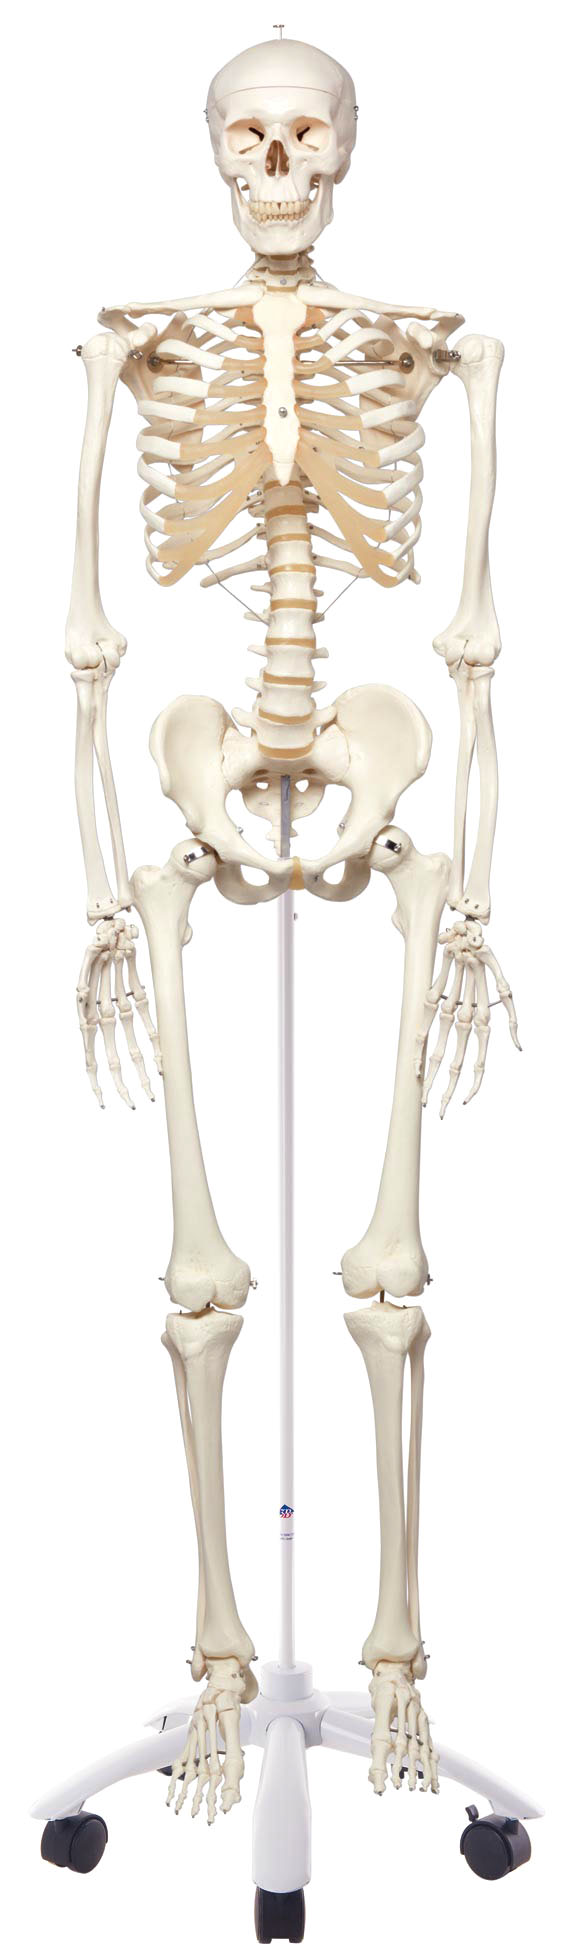 人体骨头重量 人体骨头名称 人体骨头图片 人体骨头结构图